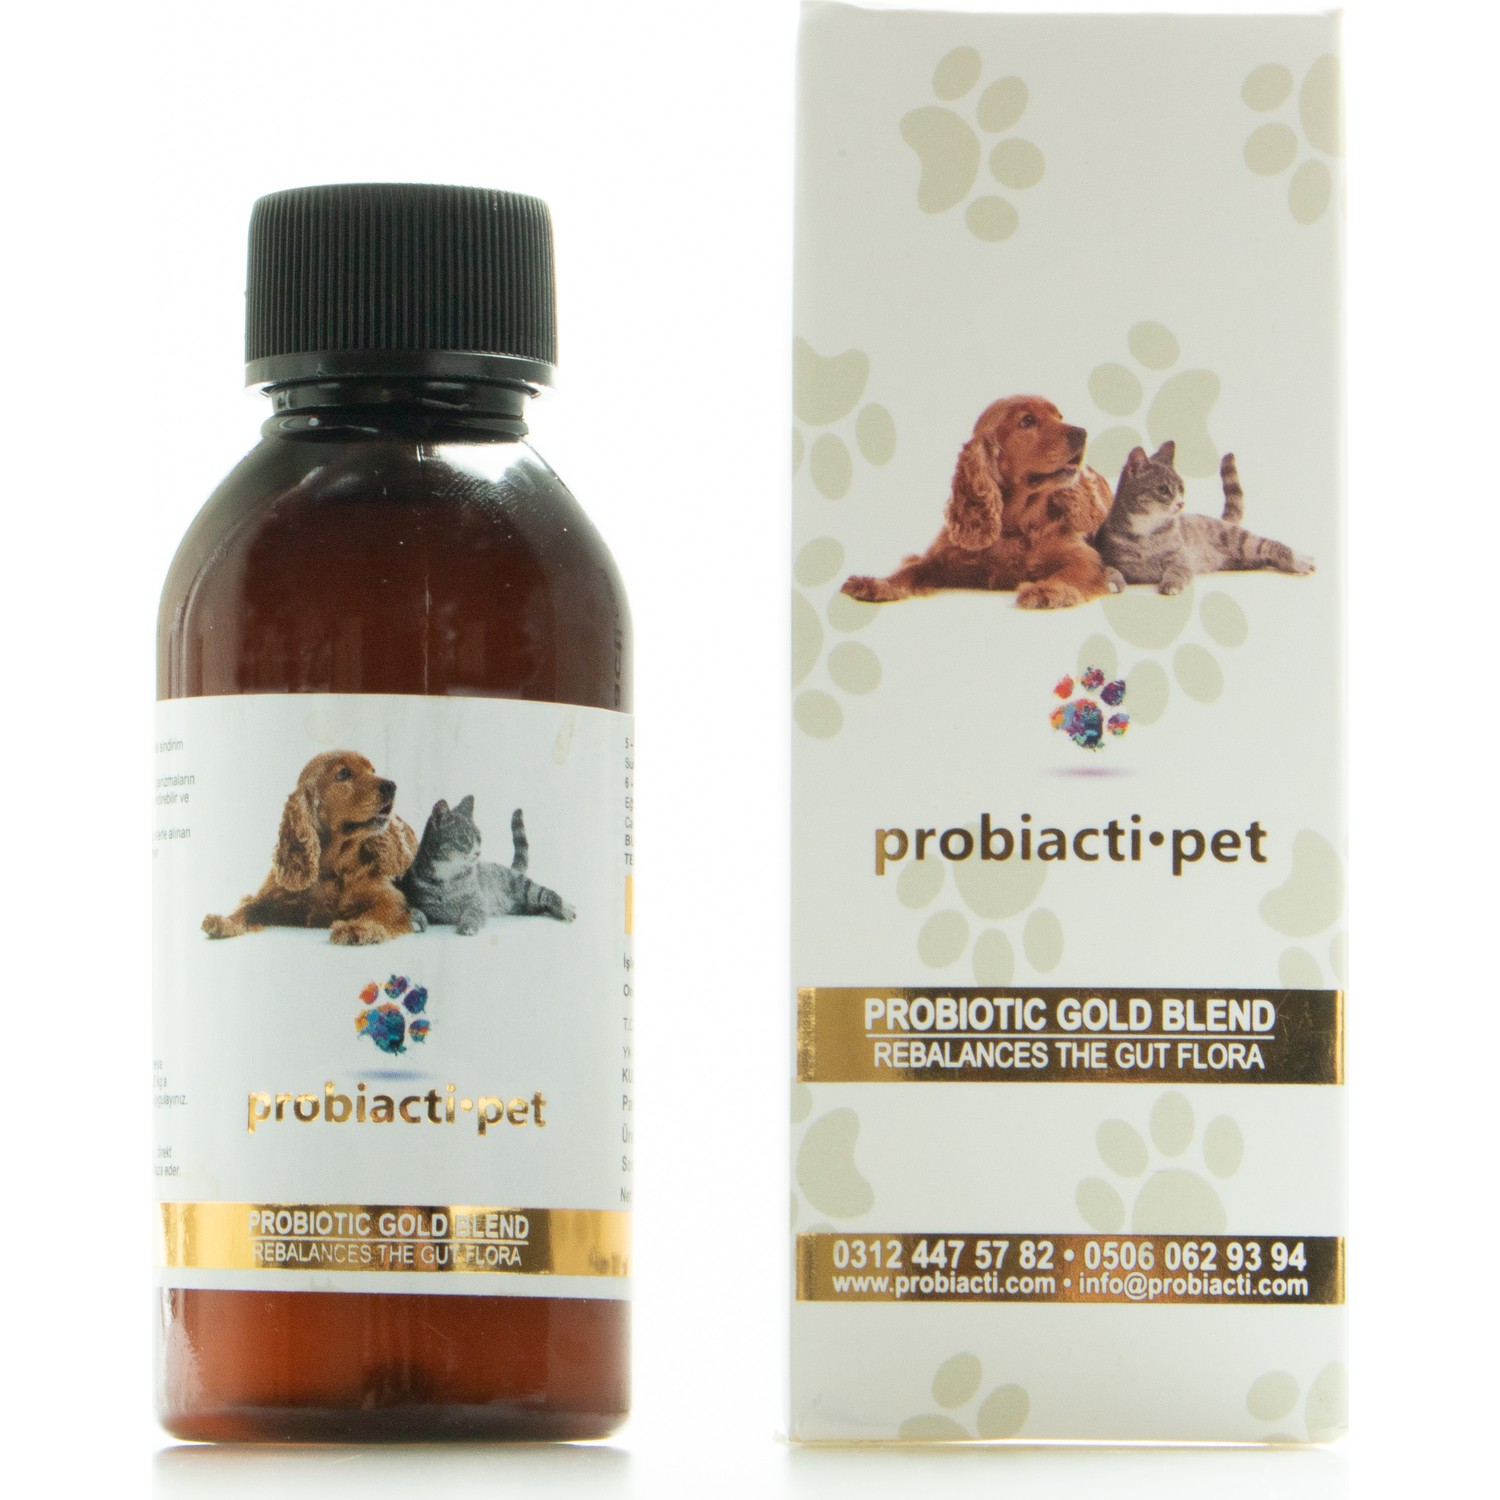 Probiactipet Kedi Sağlığı Probiyotik Destek Ürünü Fiyatı